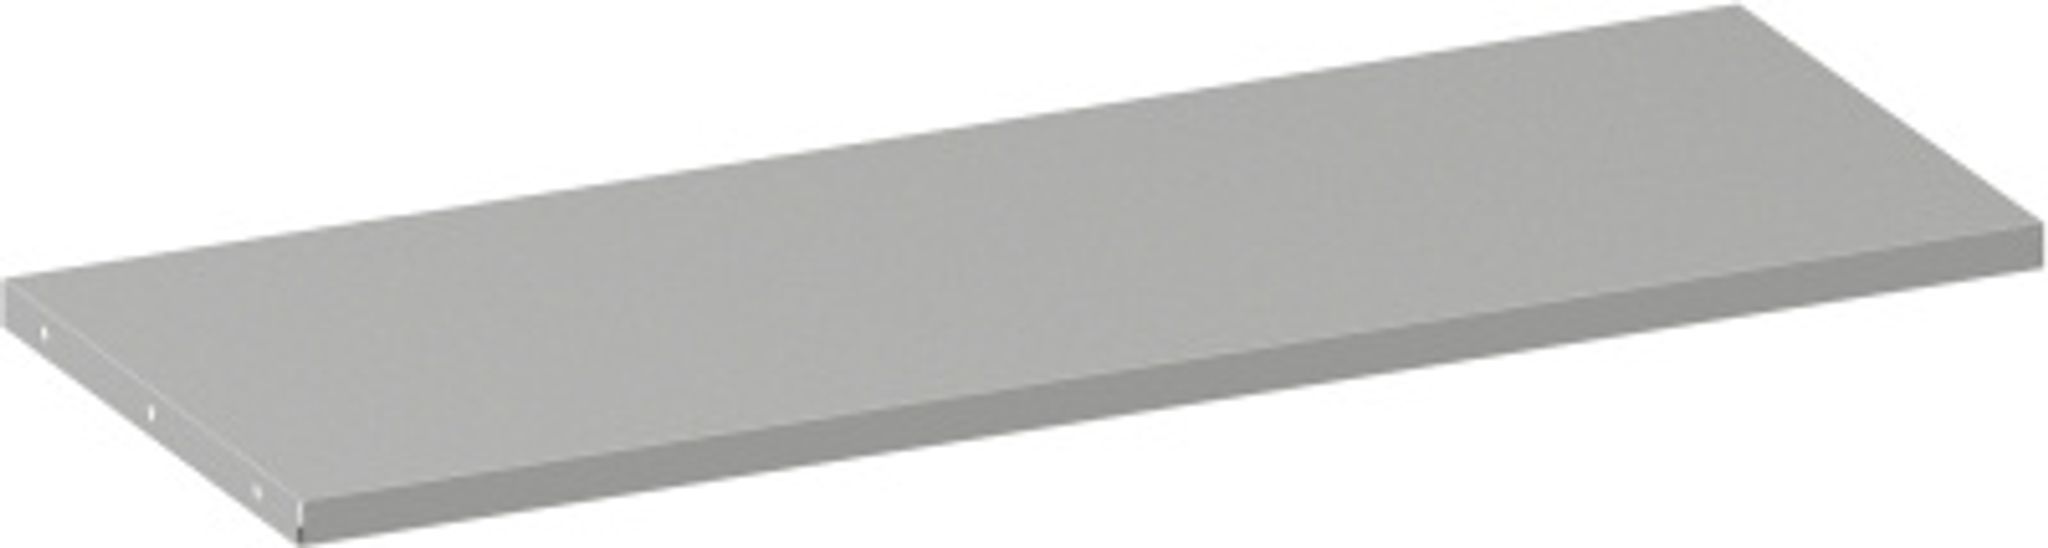 Přídavná police ke kovovým skříním, 950 x 400 mm, šedá, 1 ks